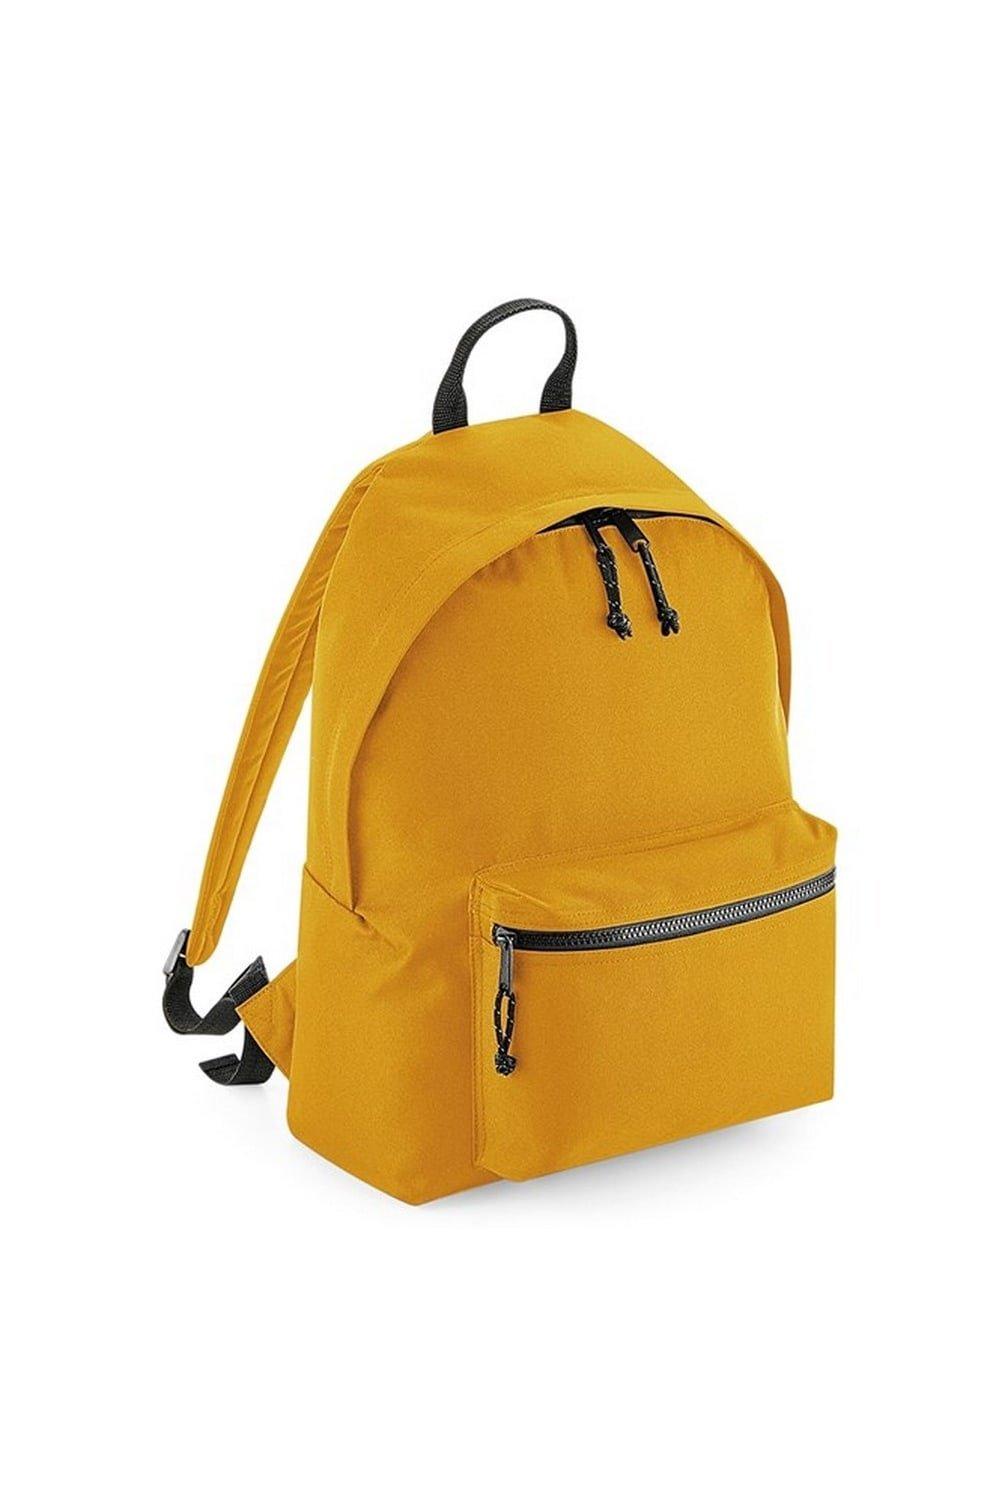 Переработанный рюкзак Bagbase, желтый